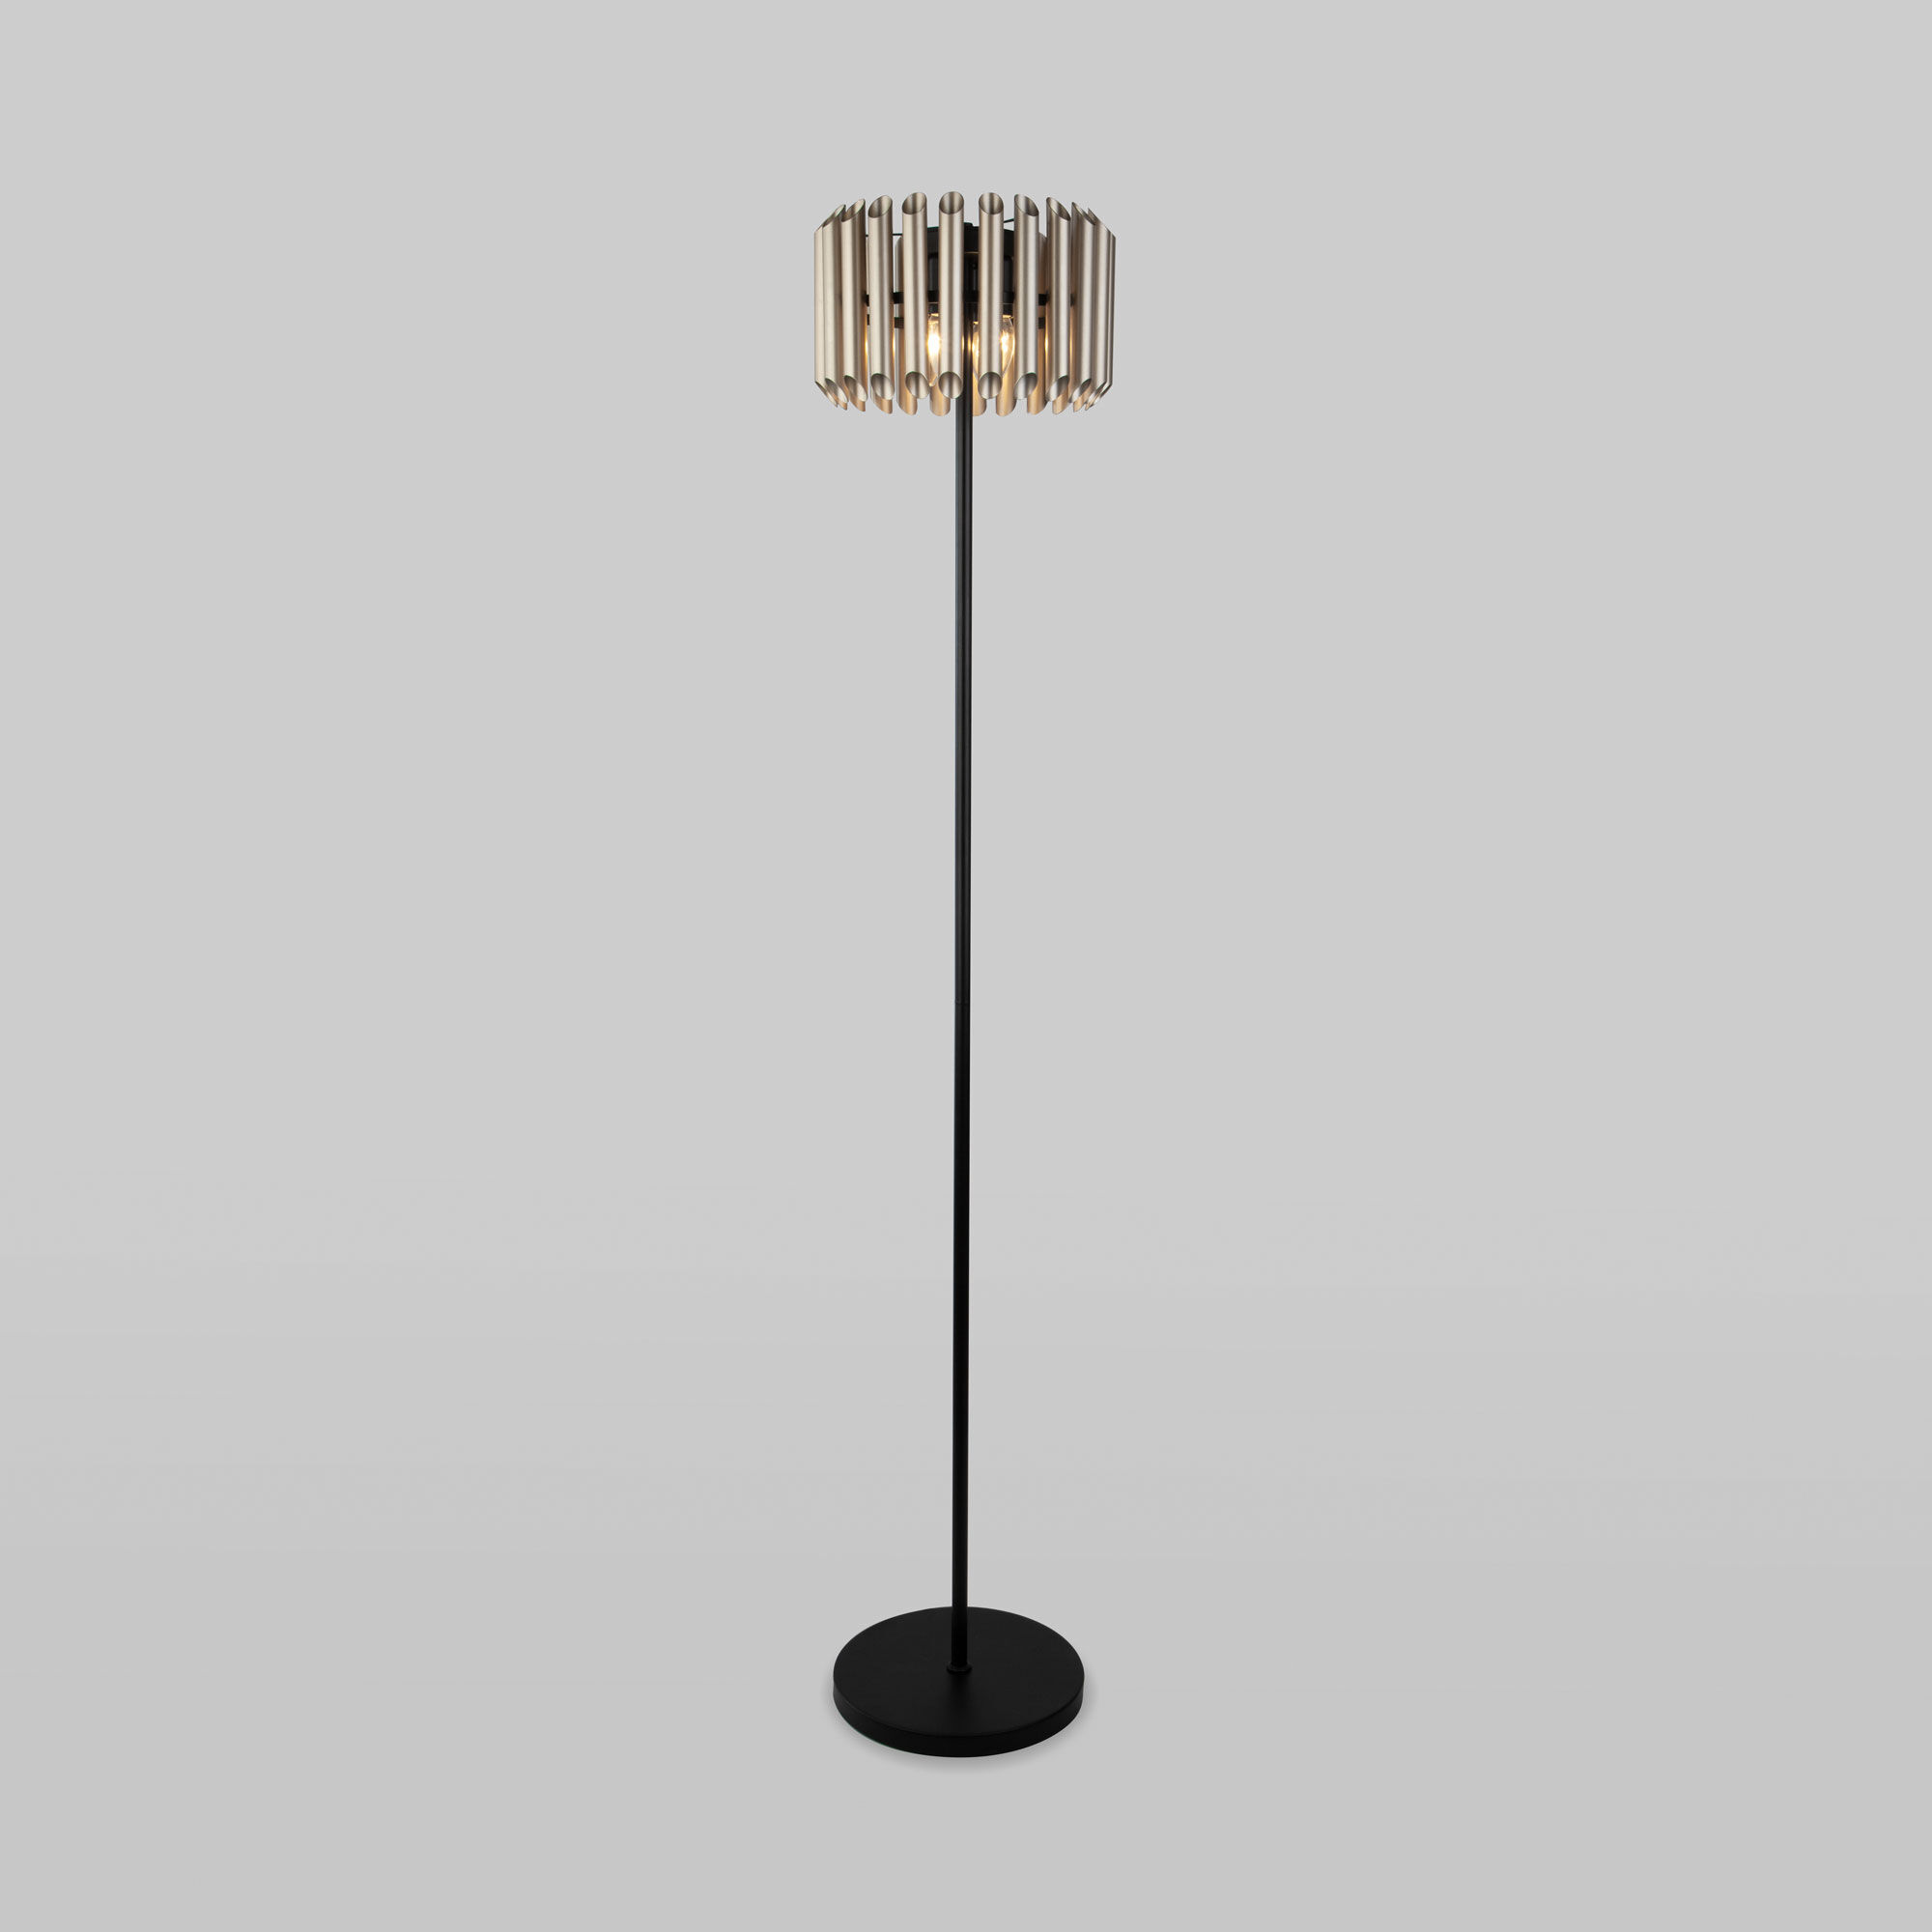 Напольный светильник с металлическим плафоном Bogate's Castellie 01124/4. Фото 1